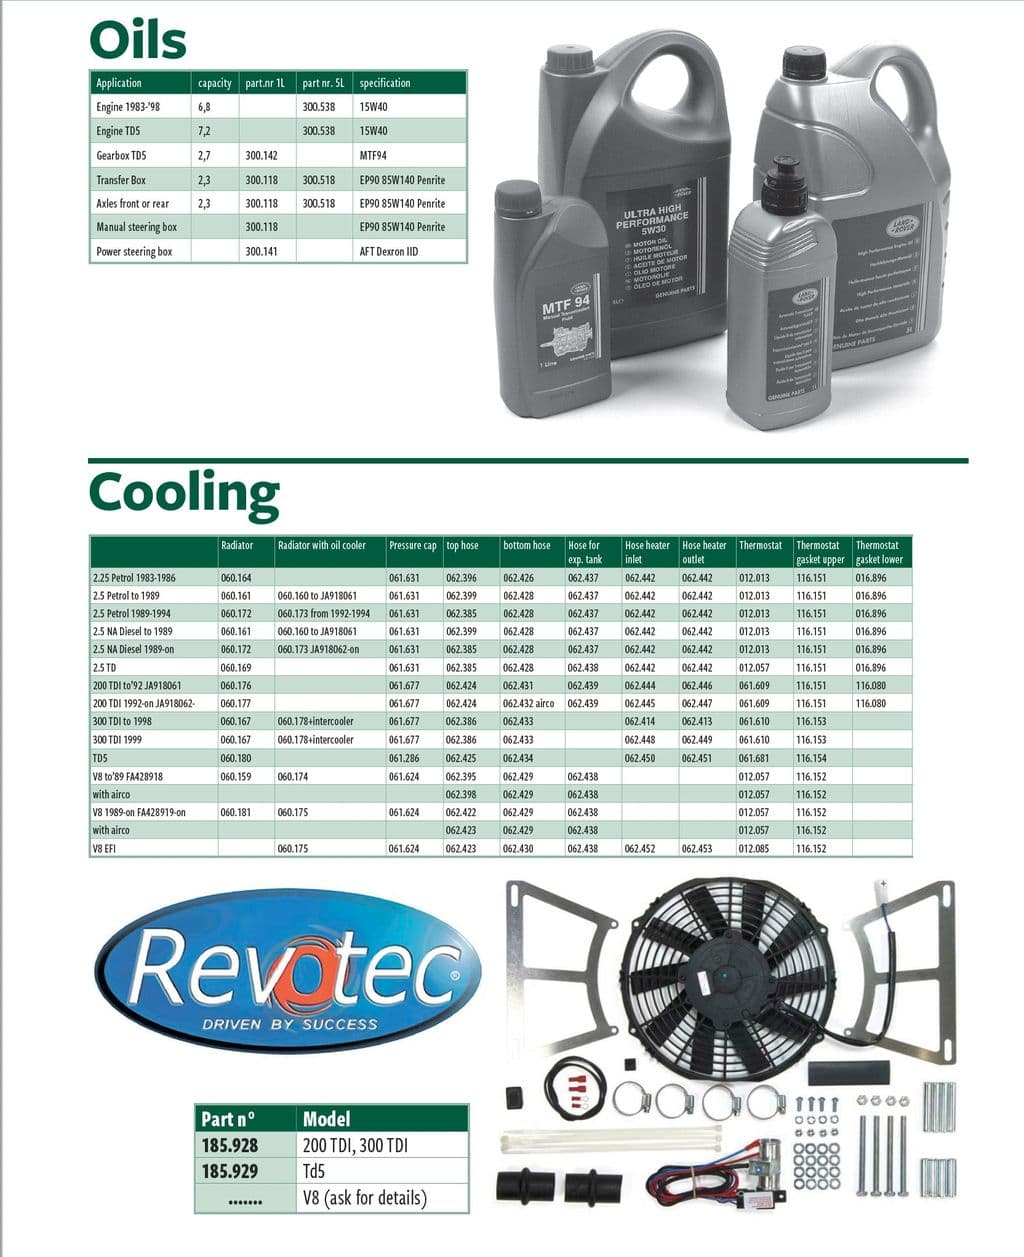 Oils & cooling - Cooling system - Engine cooling - Morris Minor 1956-1971 - Oils & cooling - 1